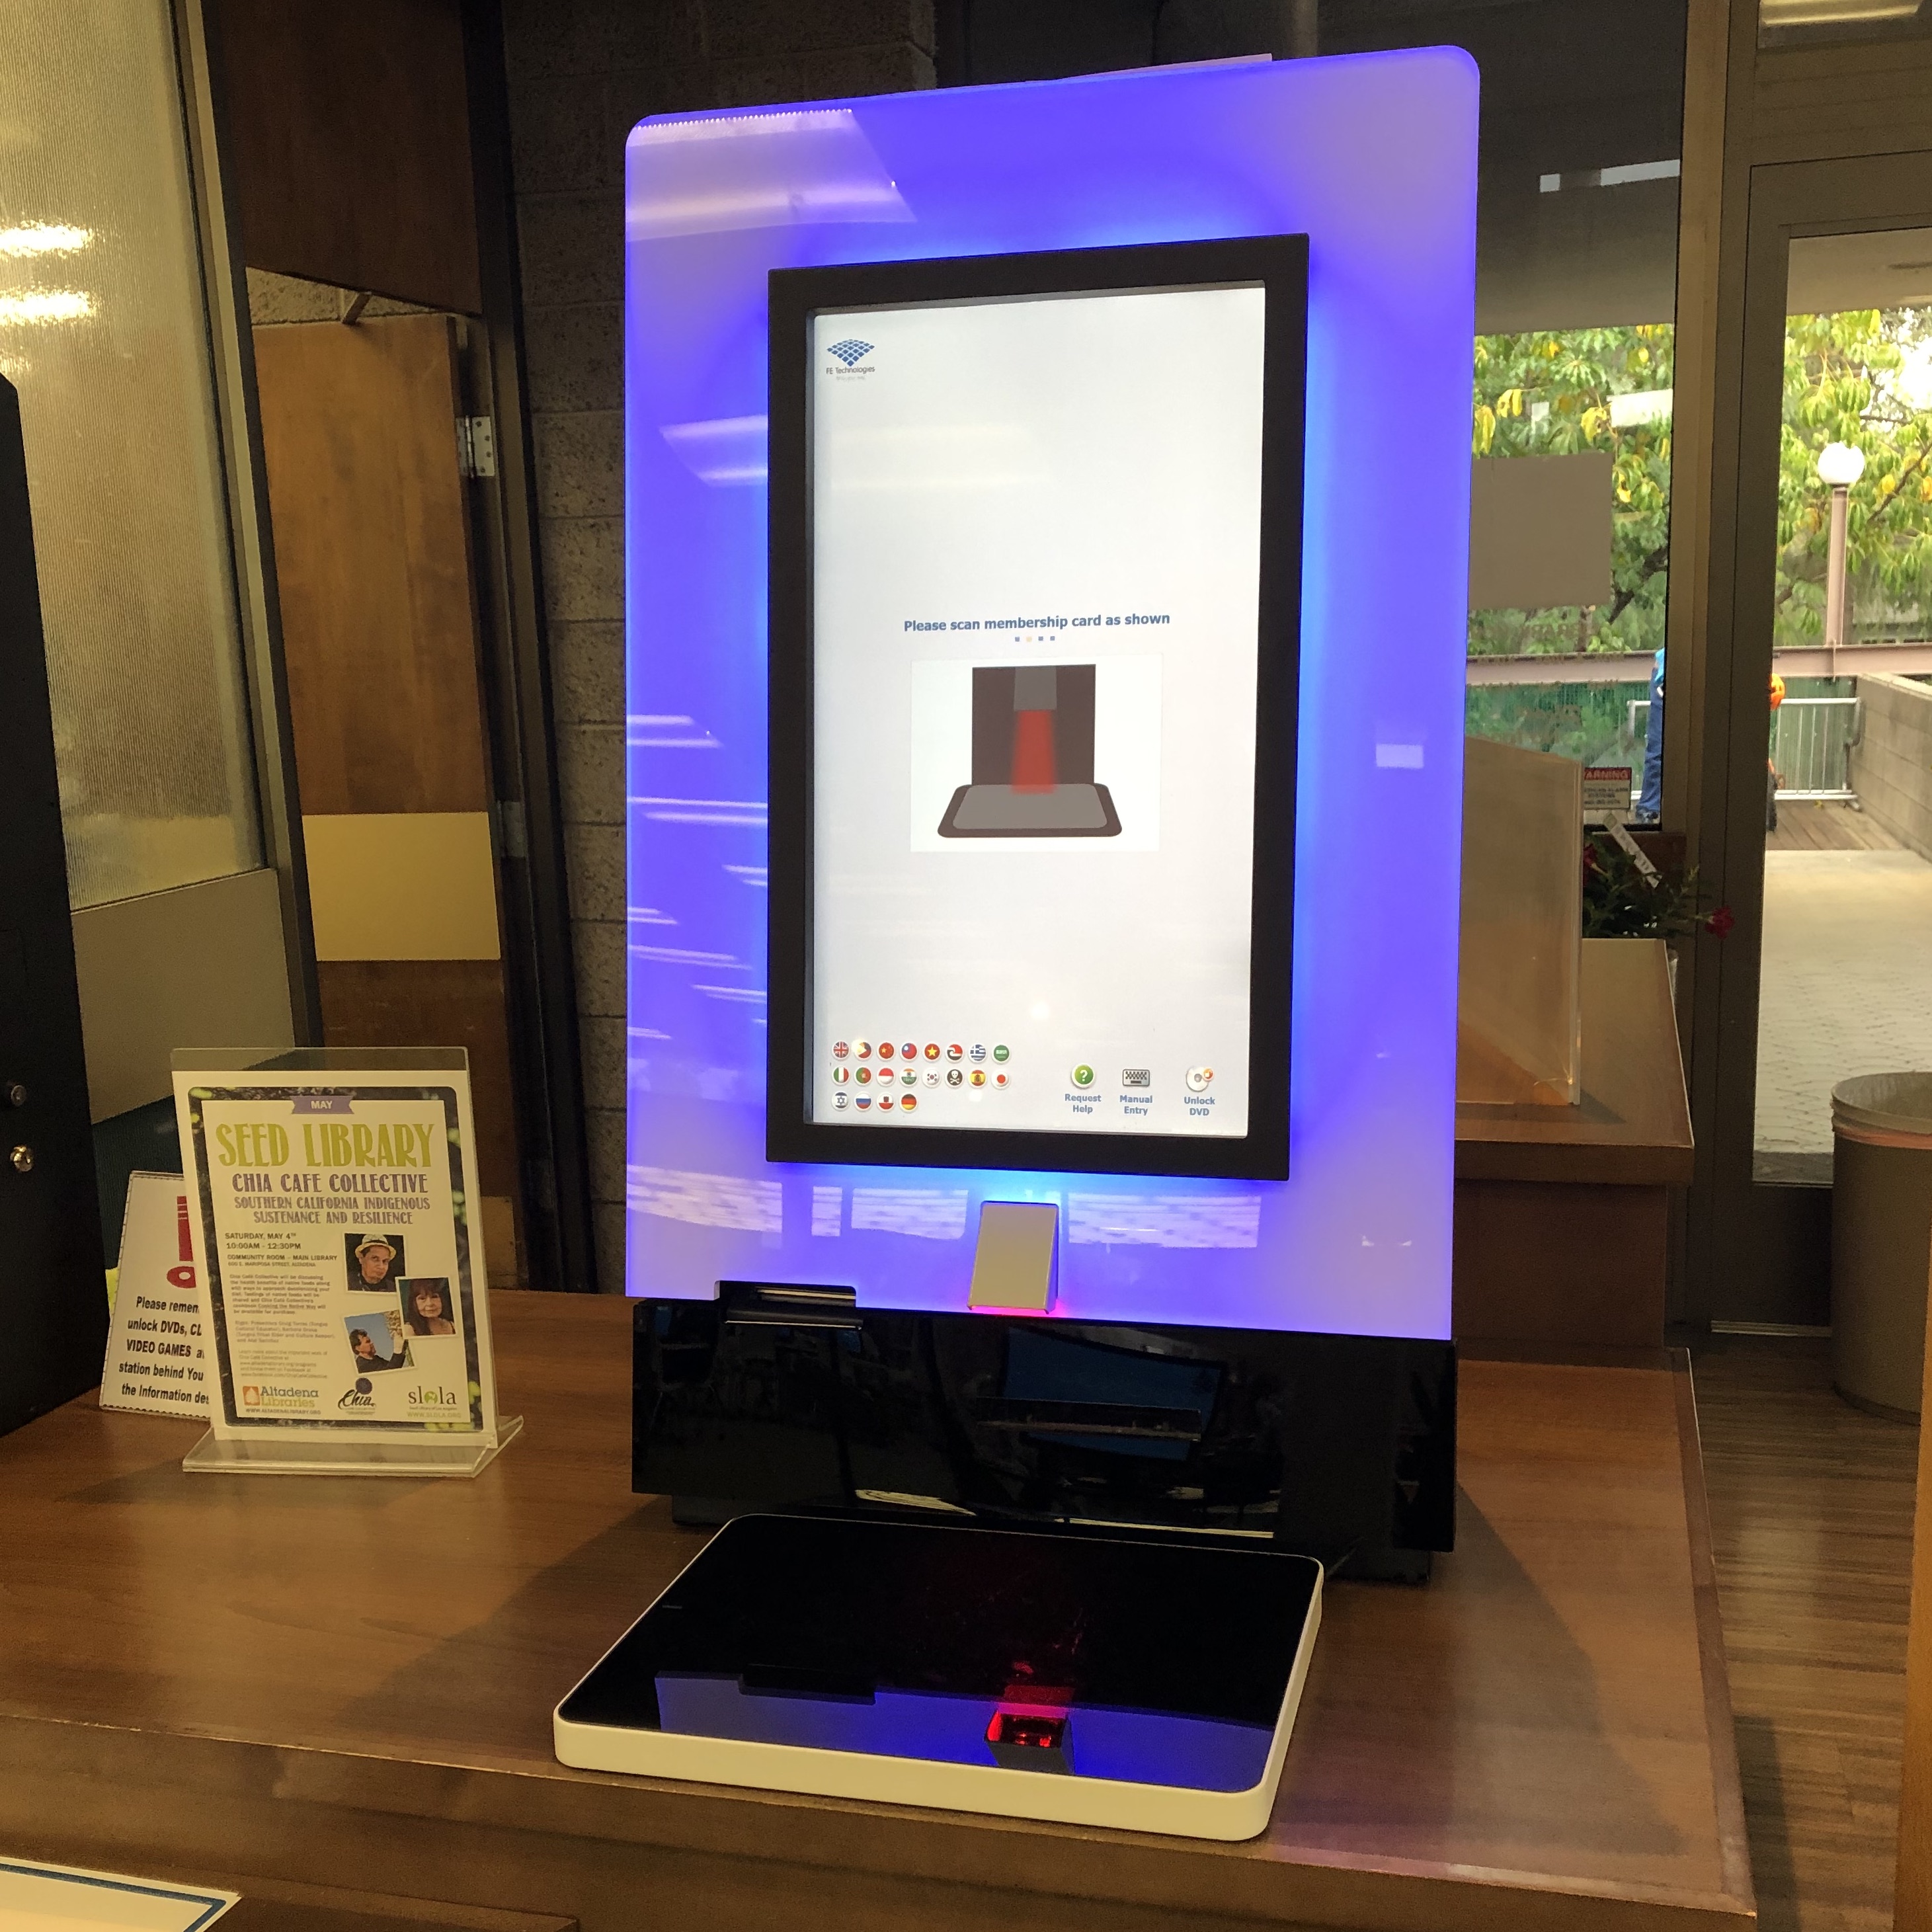 New RFID Terminal at Main Library